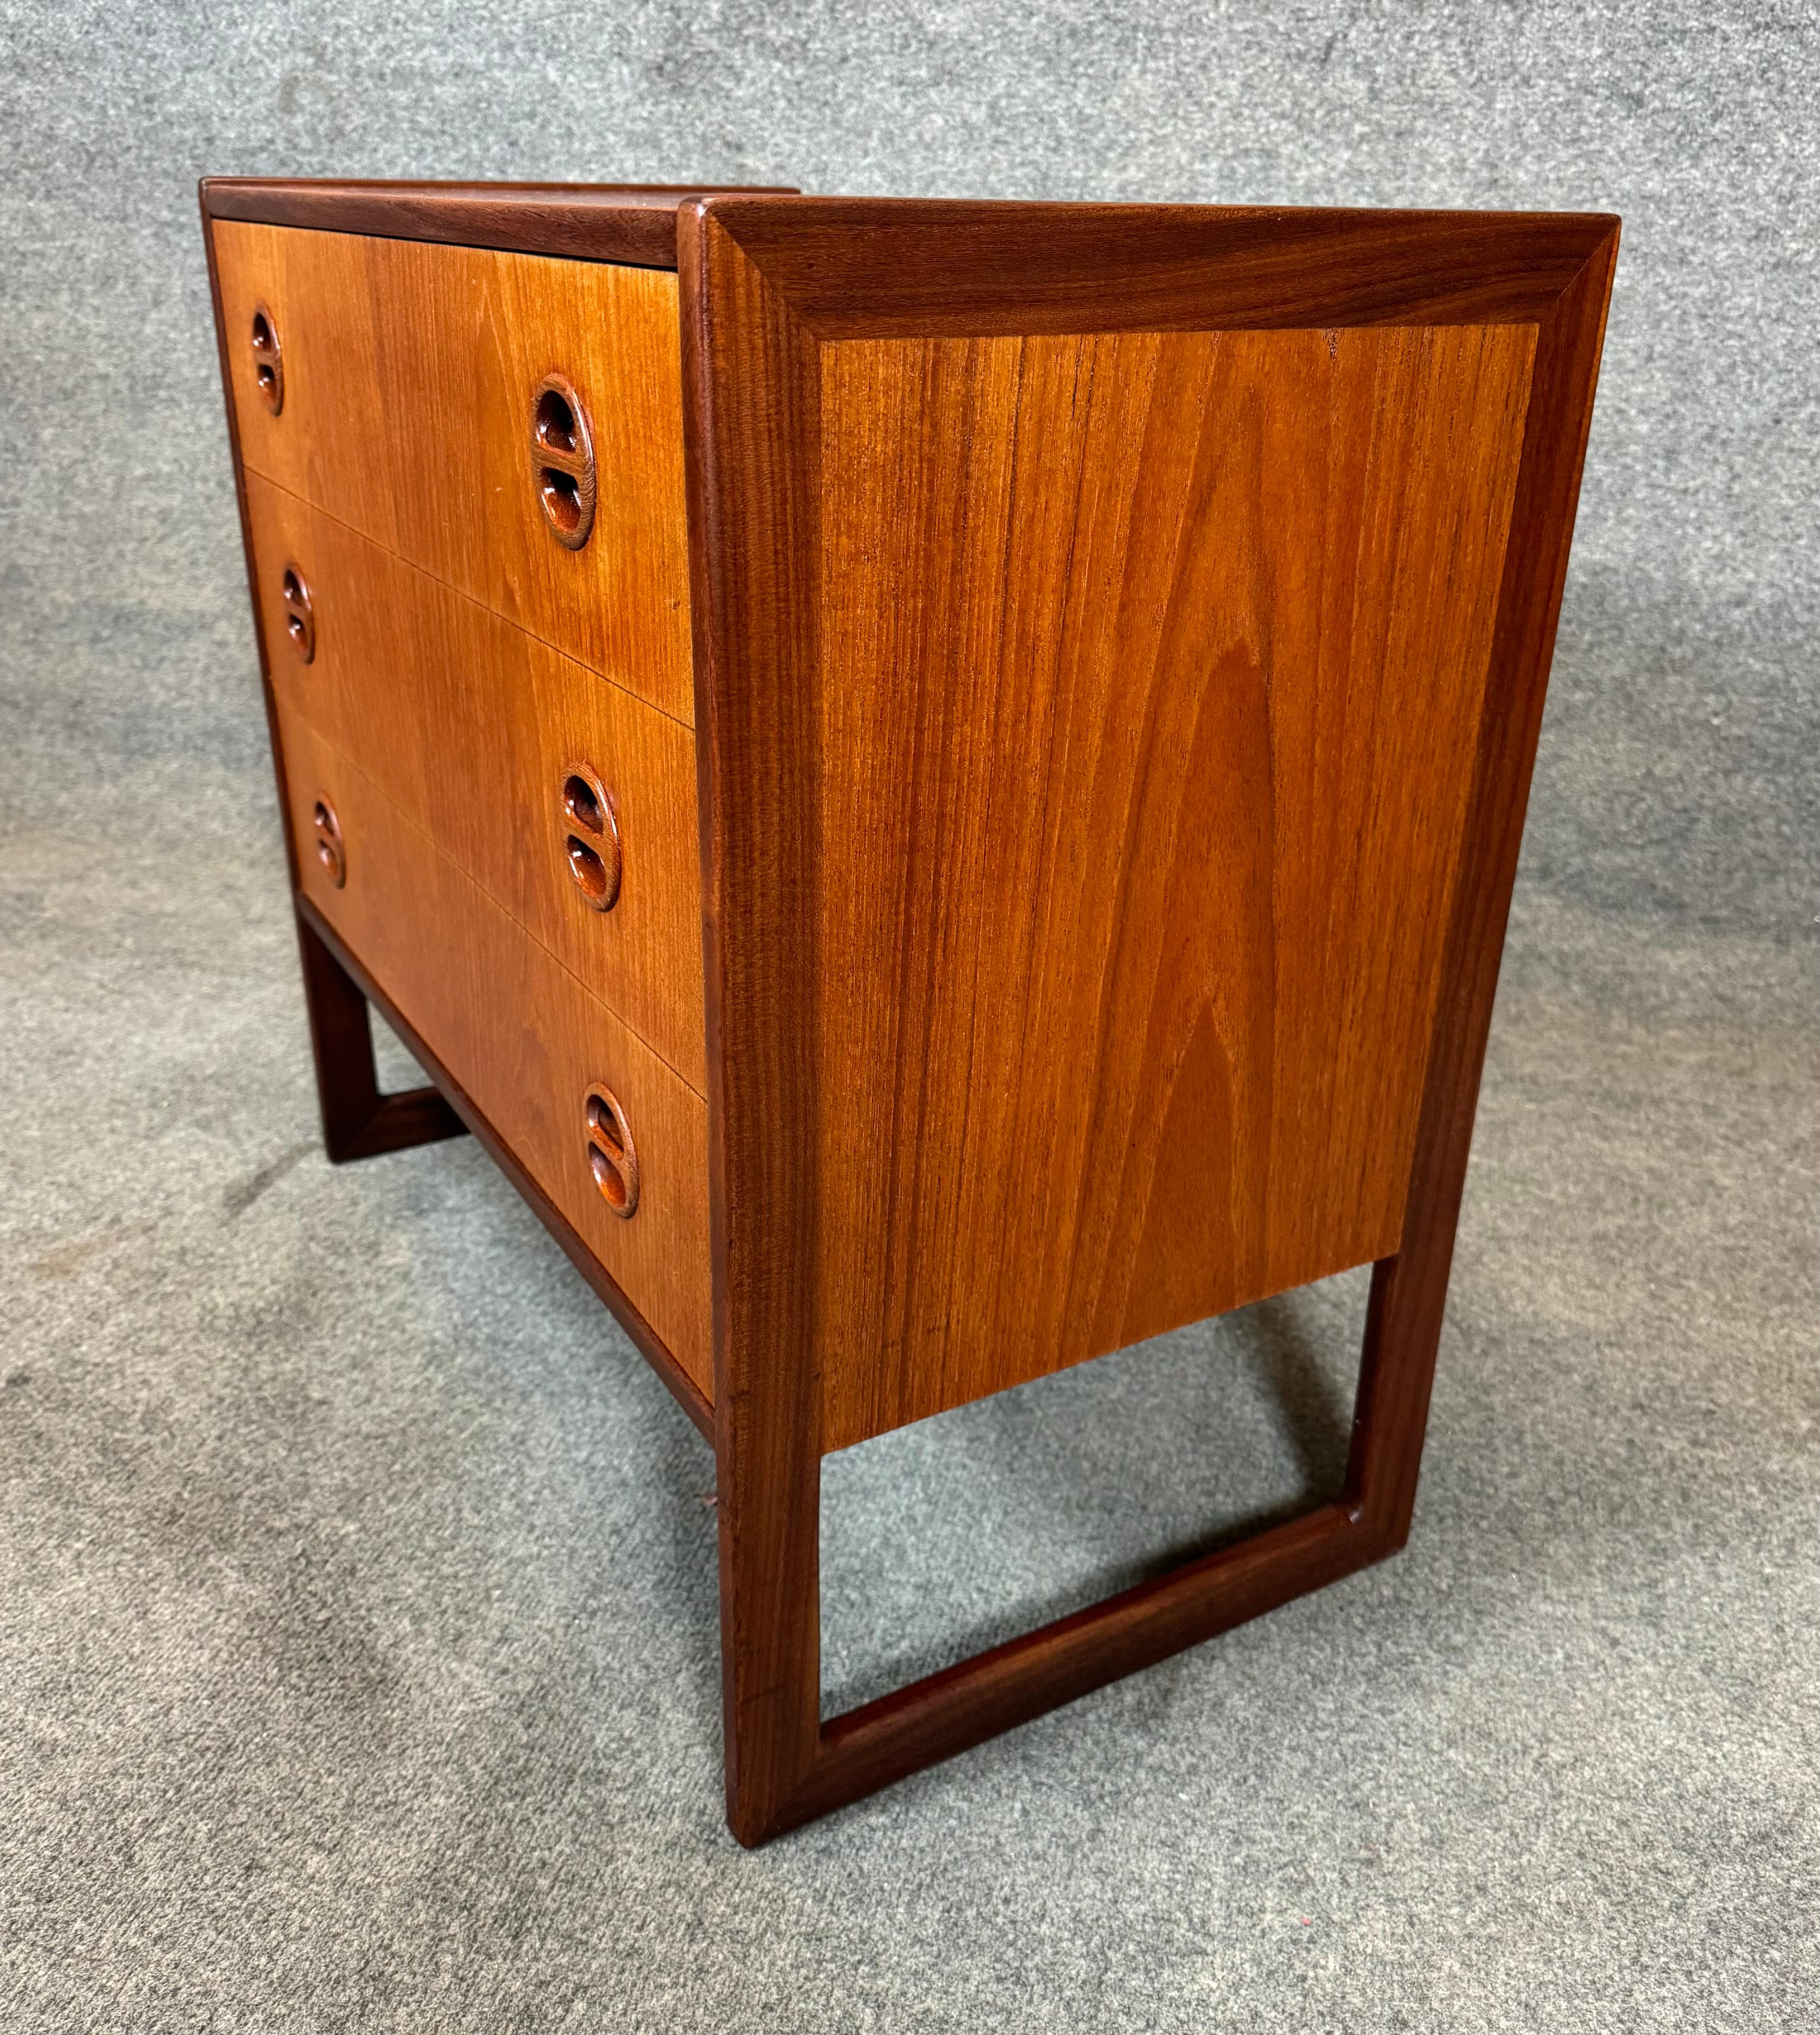 Vintage Danish Mid Century Modern Teak LowBoy Dresser Chest by Arne Wahl Iversen 1